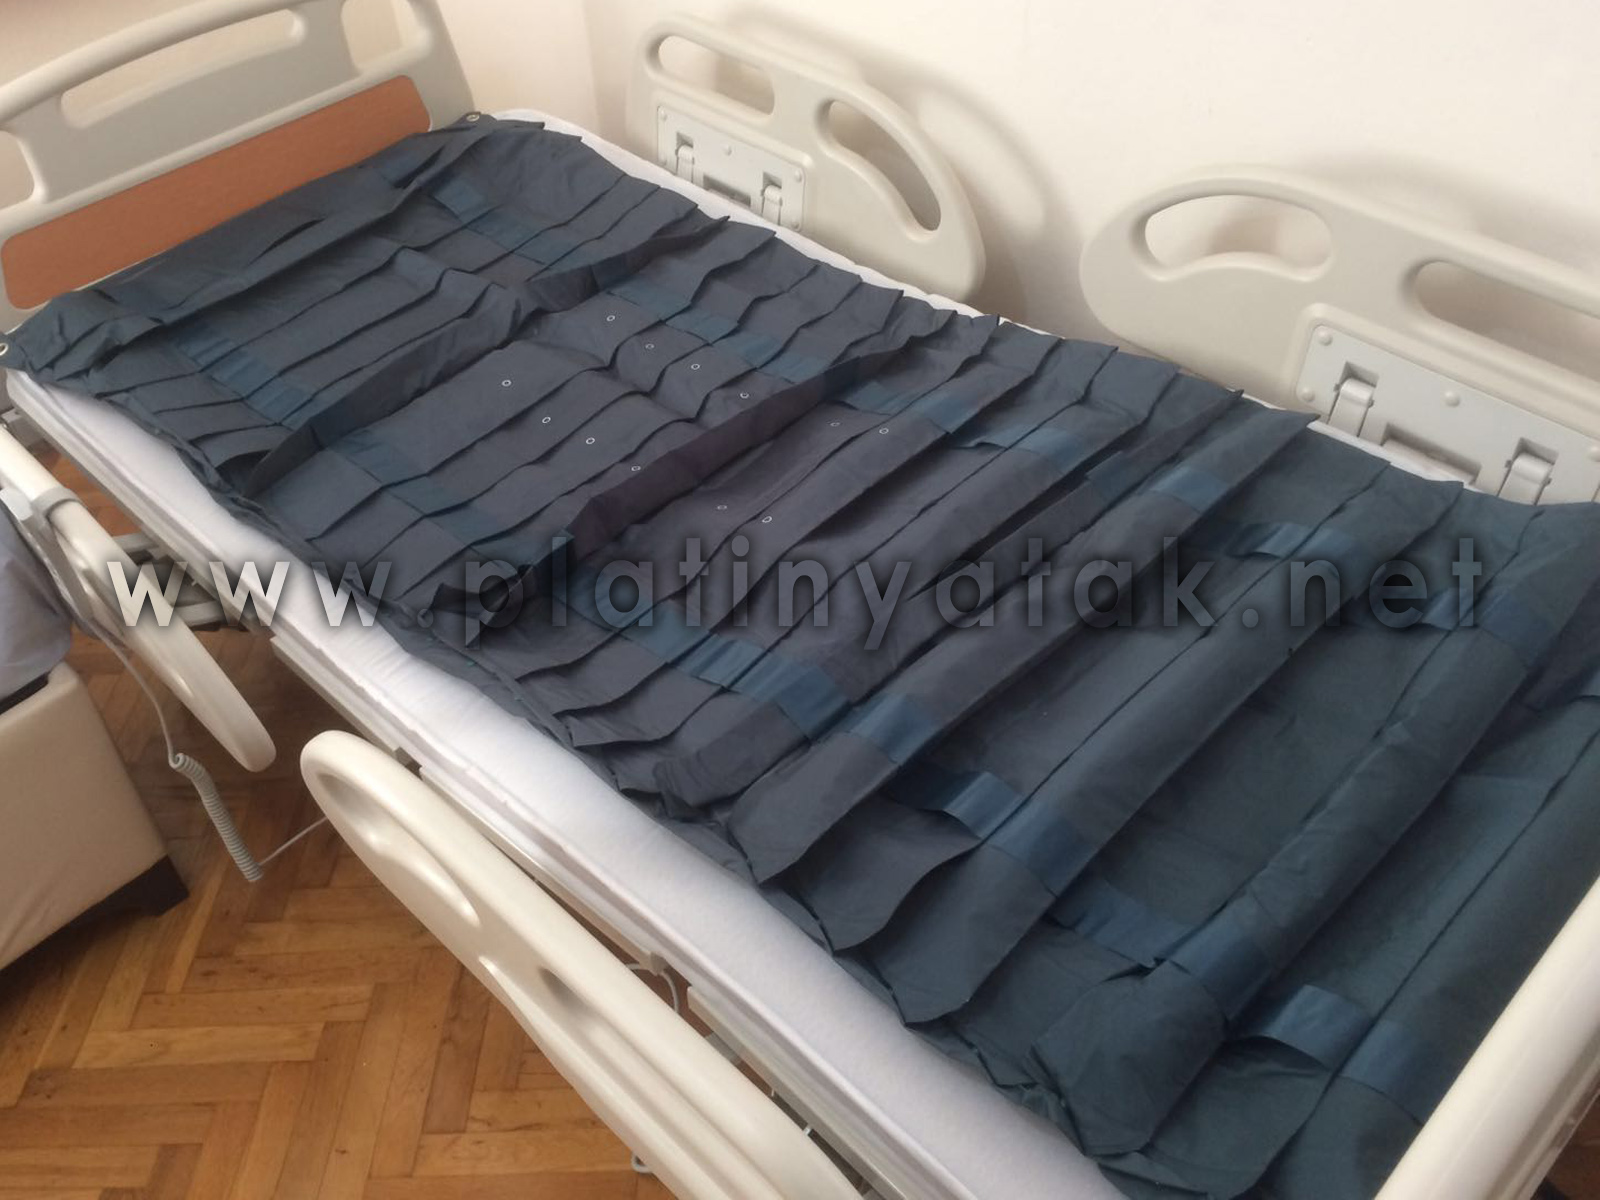 Hasta Yatağı Satış ve Kiralama Merkezi İstanbul Boru tipi havalı yatak nedir